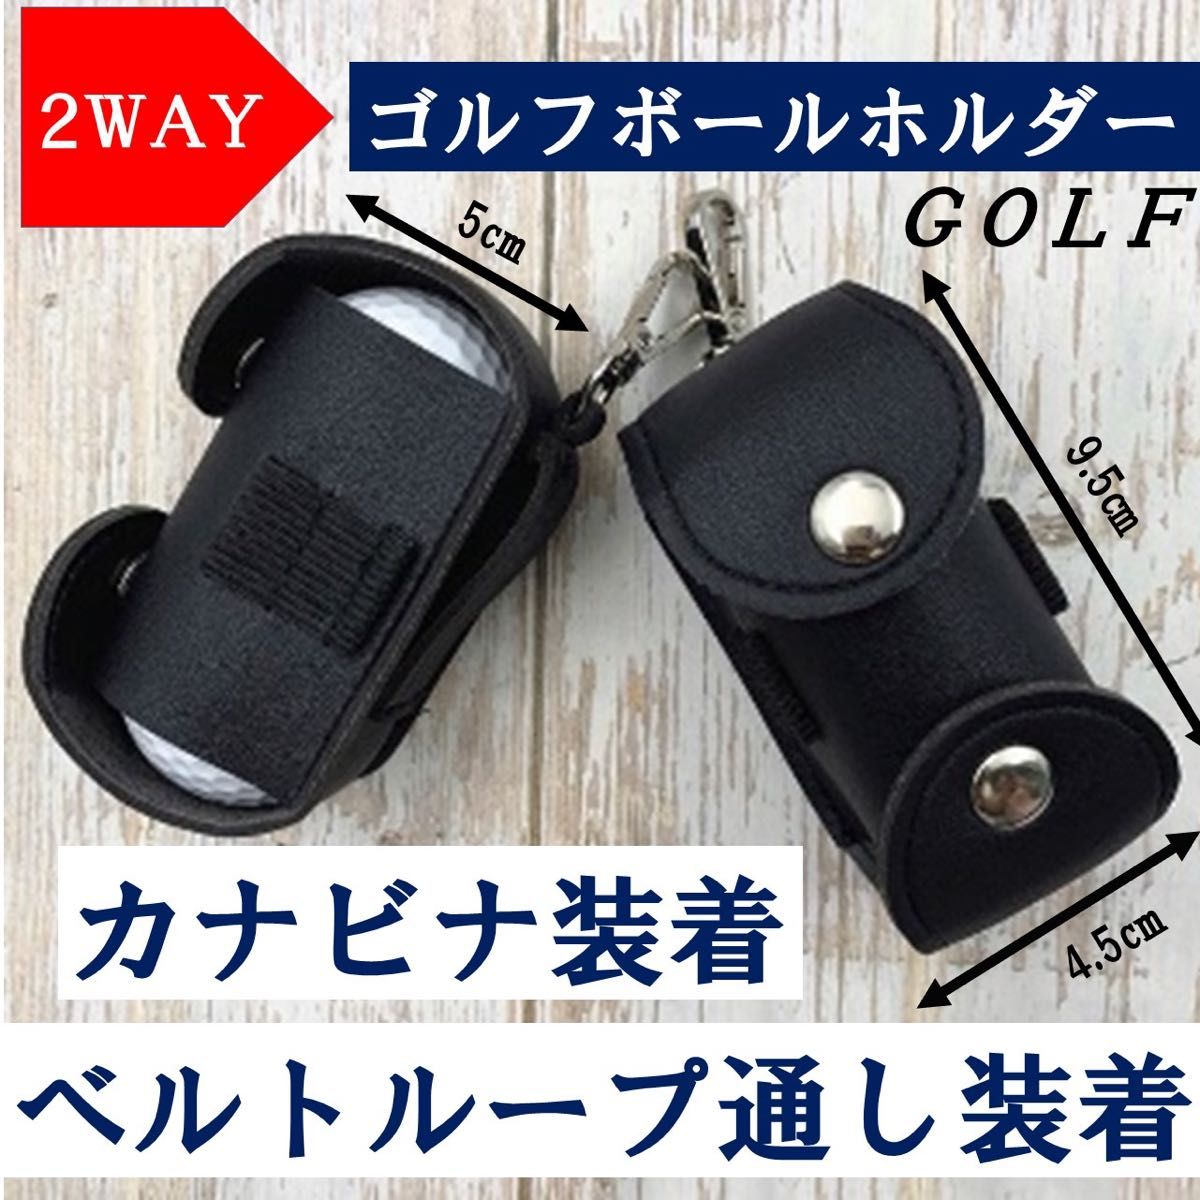 ゴルフボールケース【合成皮革】2WAY 軽量型